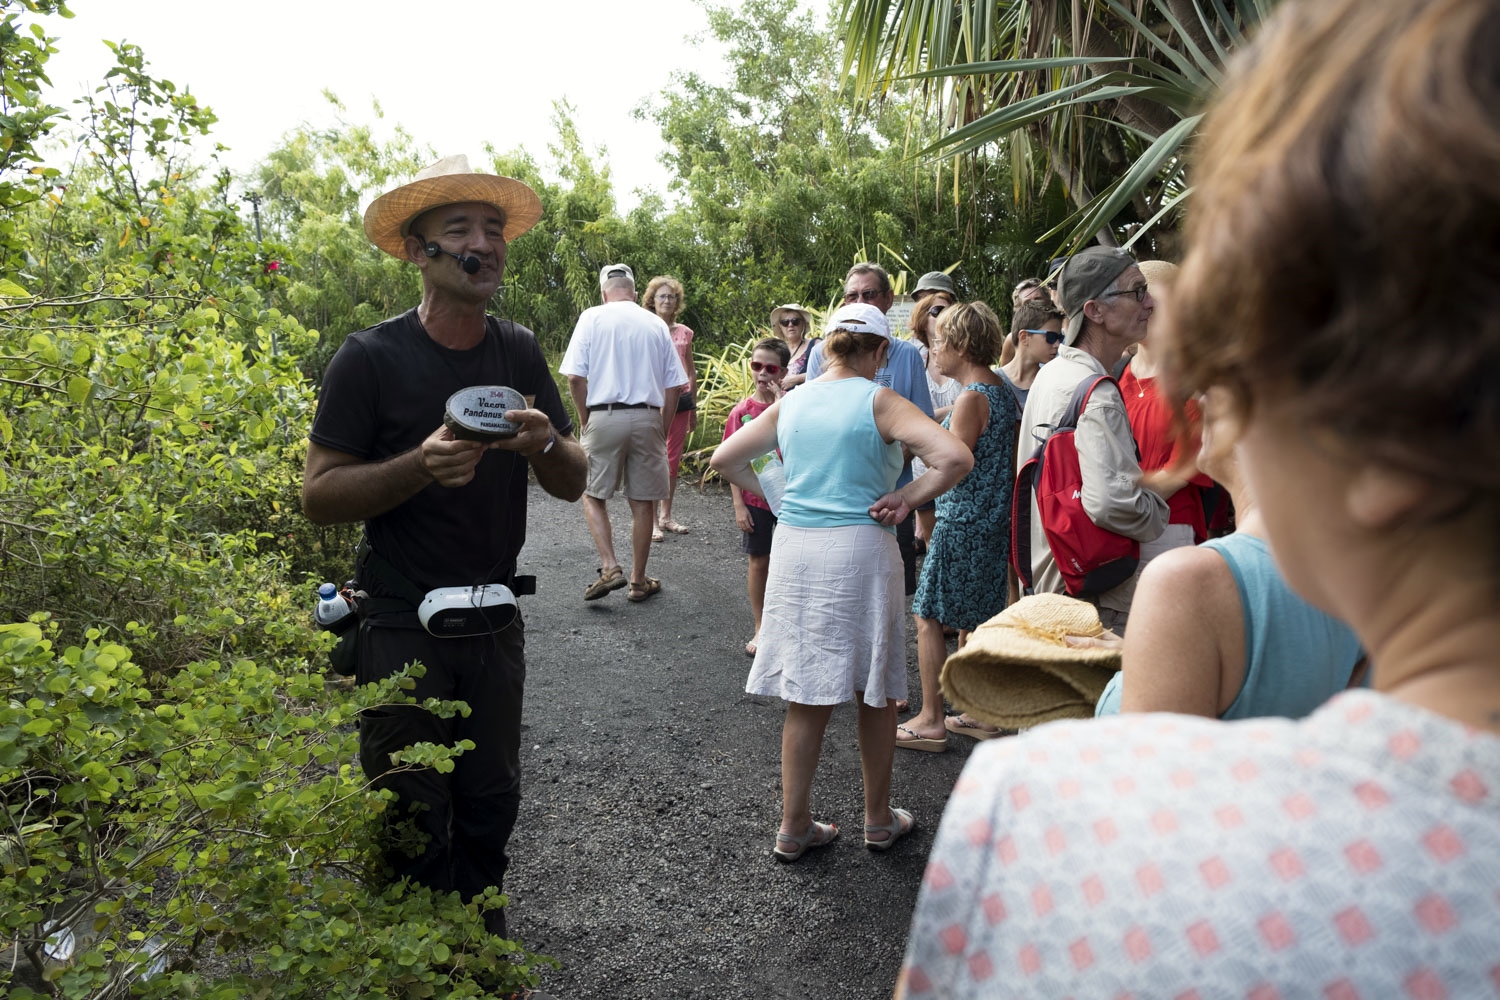 Le Domaine du Café Grillé a ouvert en 2011 à Saint-Pierre, à l’île de la Réunion. Ce parc de 4 hectares contient environ 950 espèces de plantes différentes, soit environ 10 000 arbres plantés. 